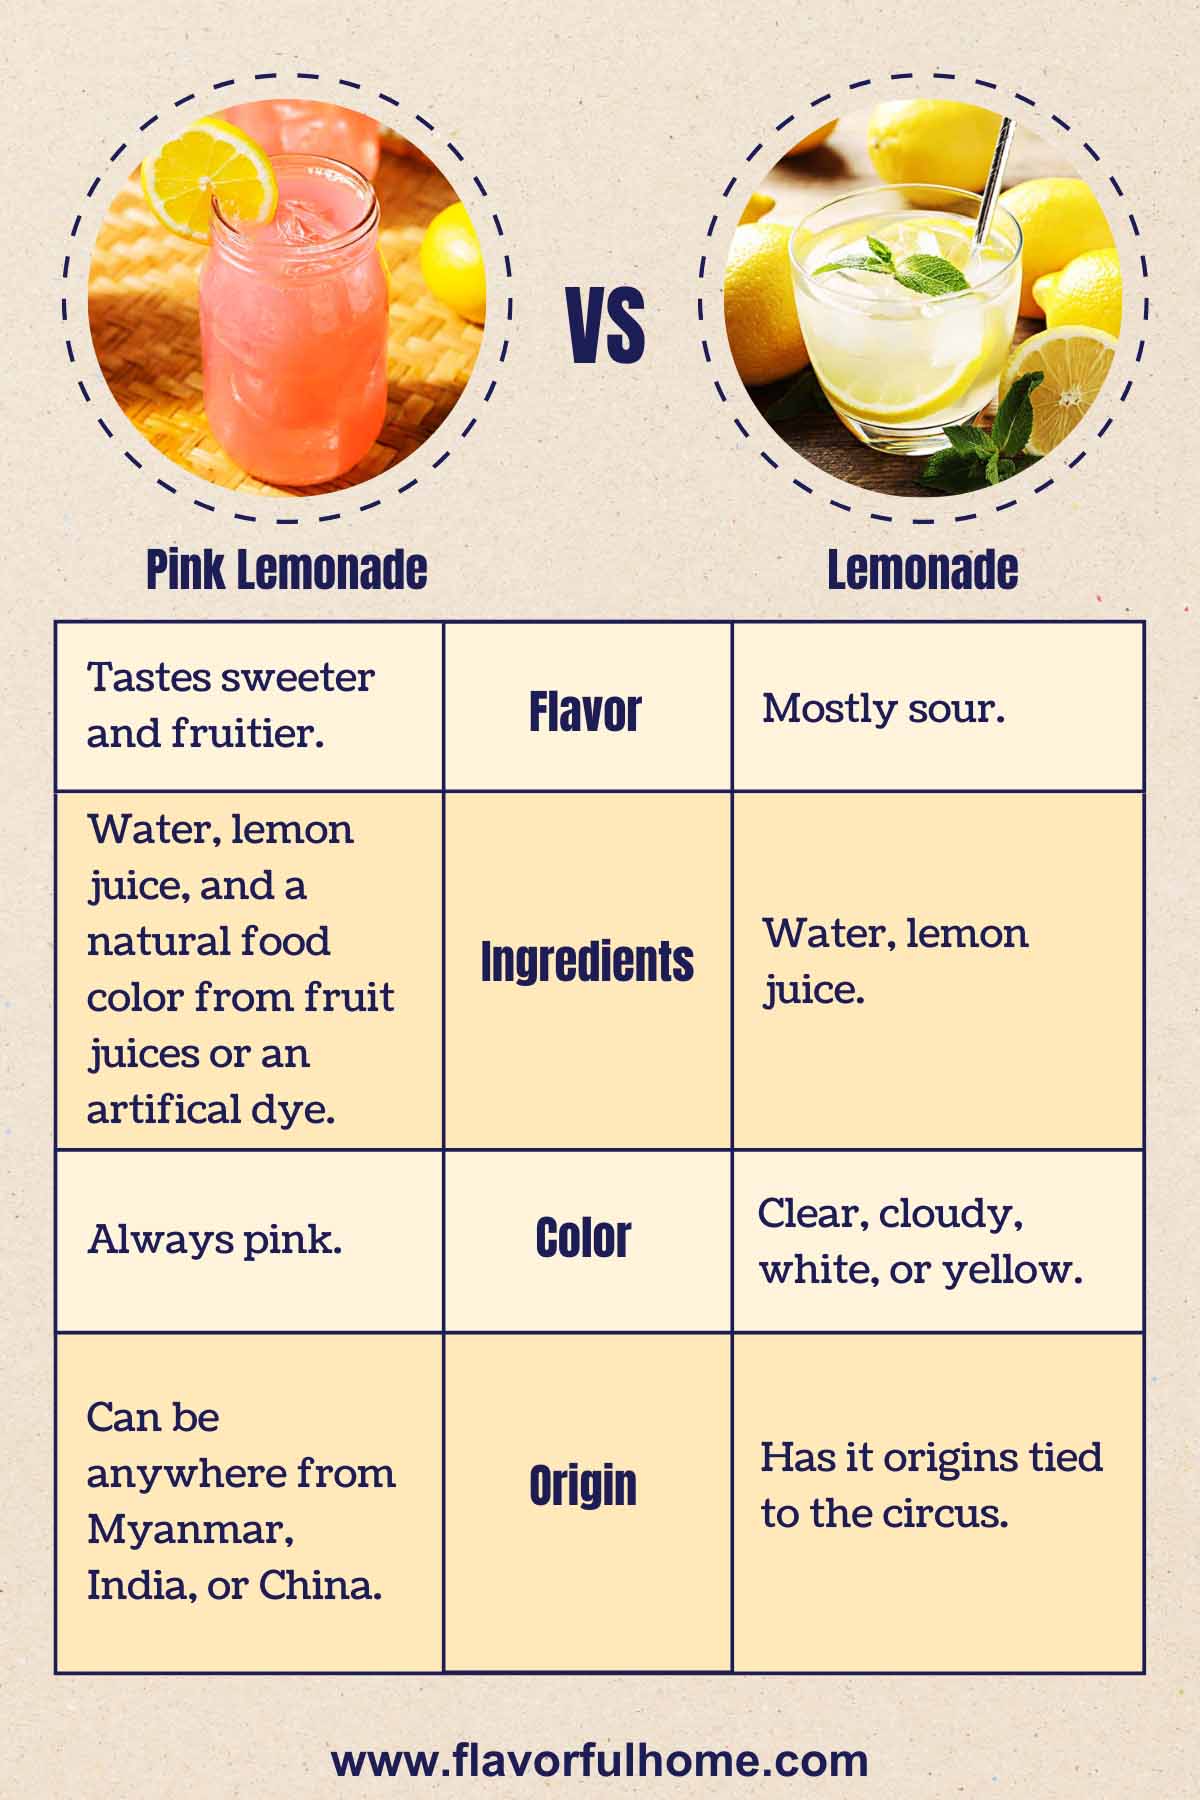 Infographic showing different facts between lemonade vs pink lemonade